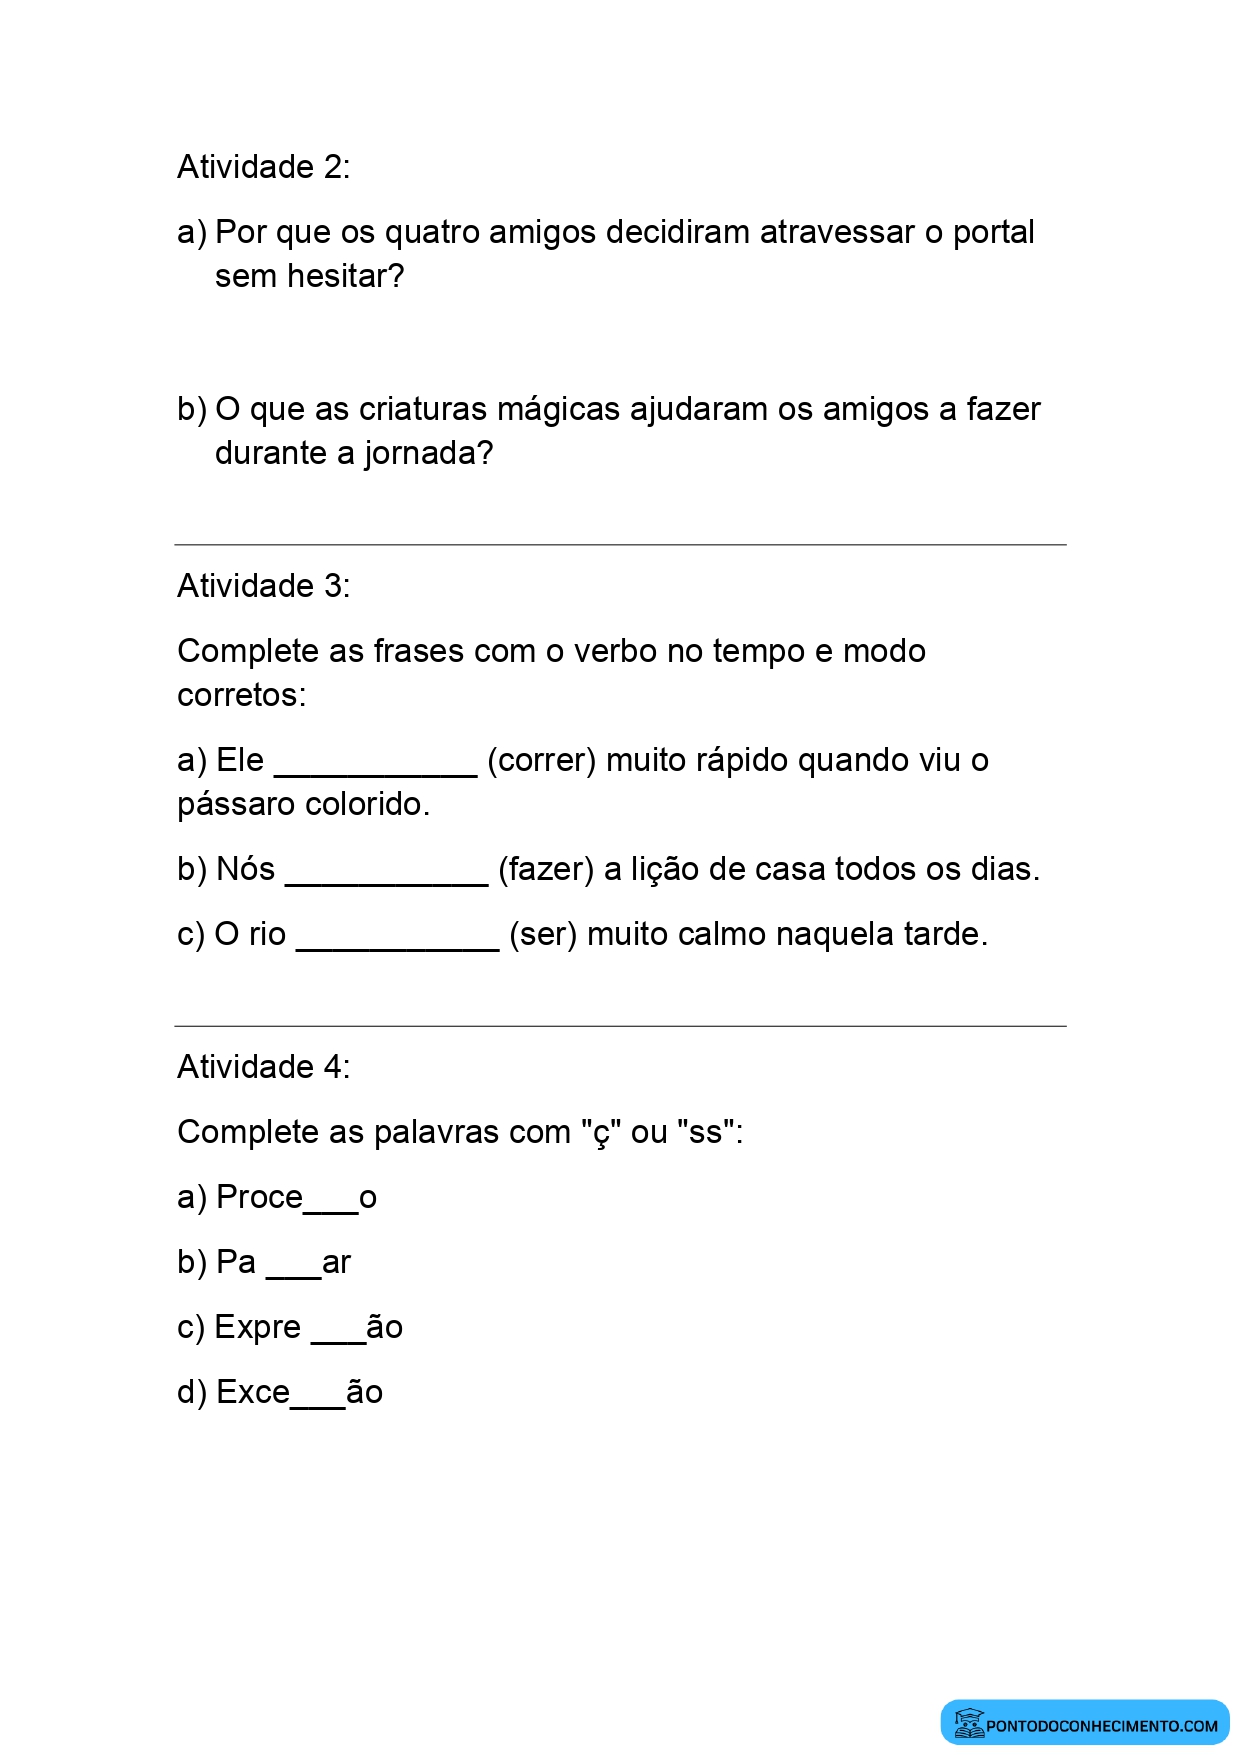 Atividades pedagógicas de diagnóstico Língua Portuguesa 5º ano do ensino fundamental